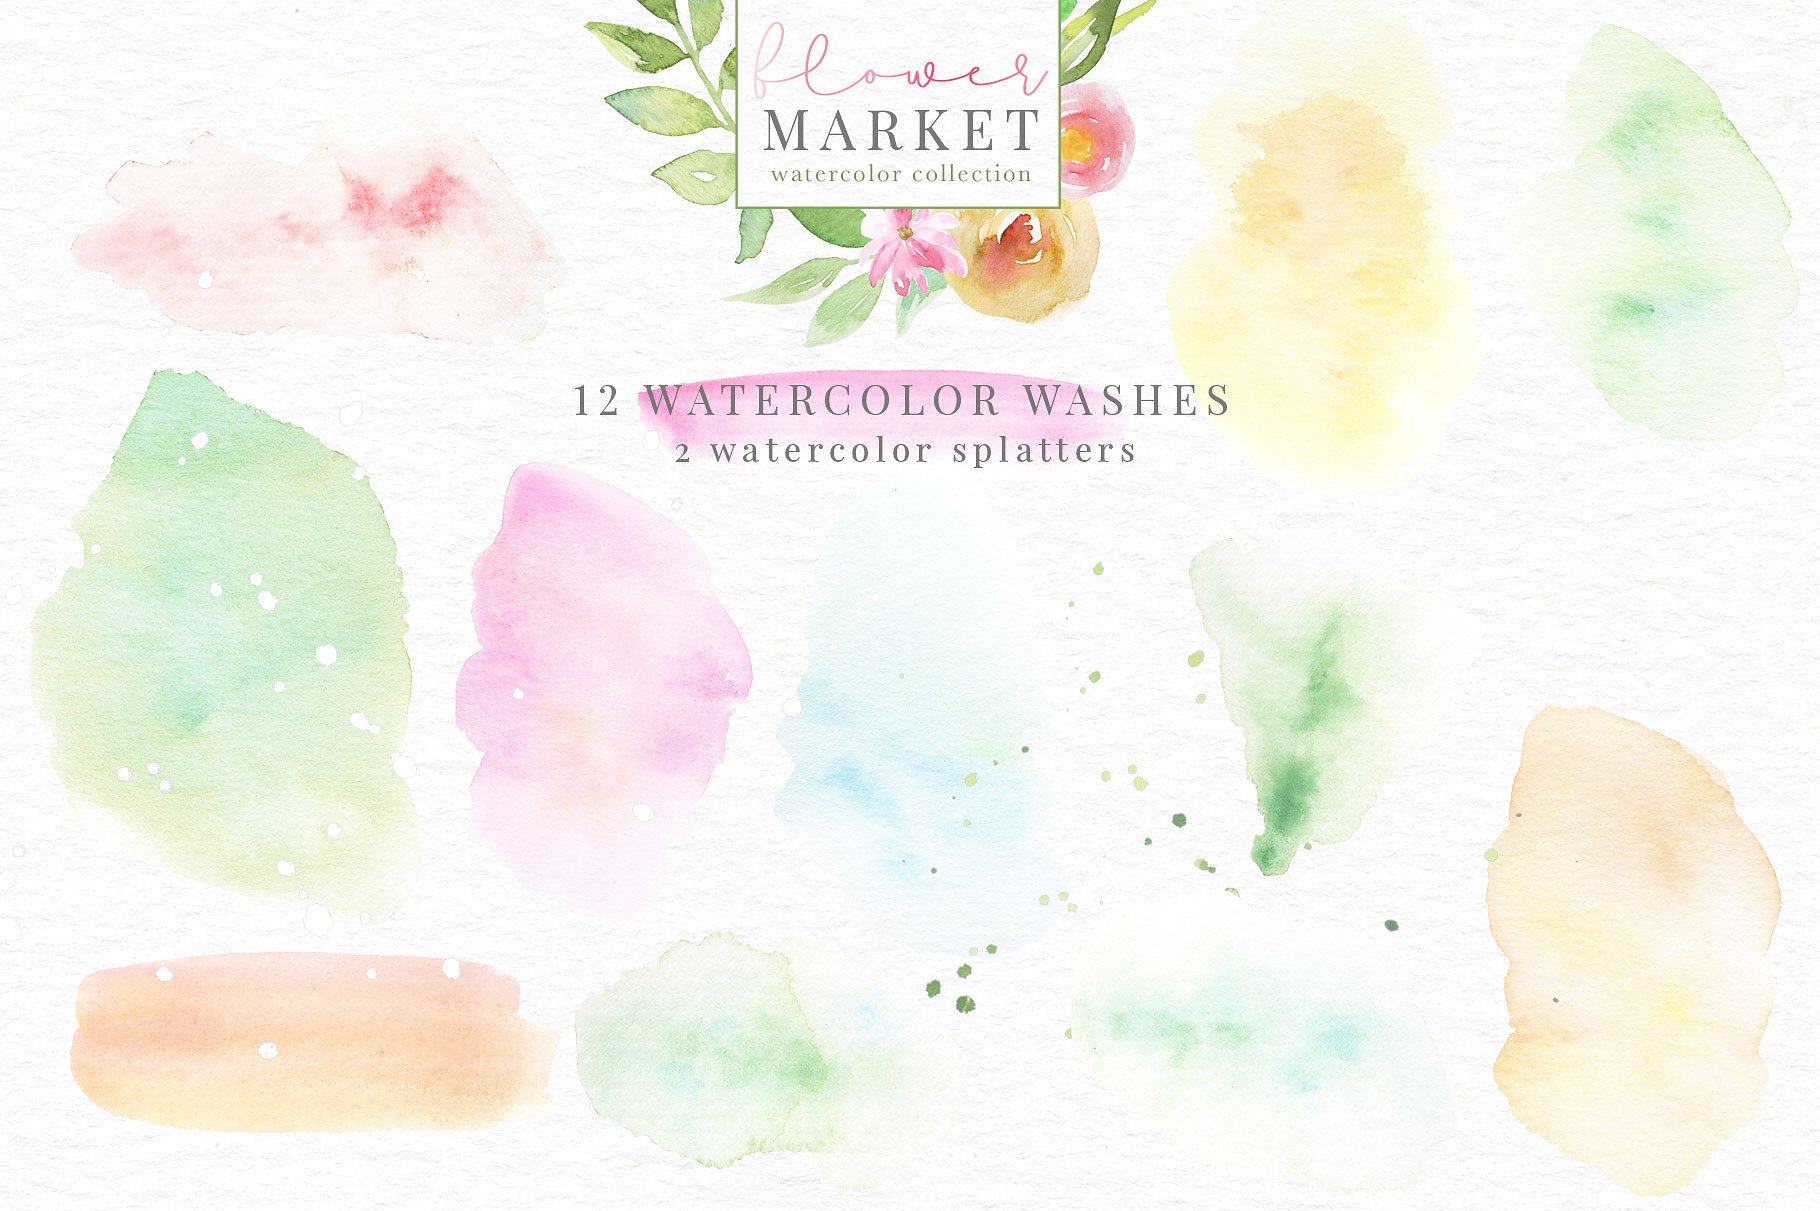 手绘水彩花卉植物设计素材Flower Market Wate